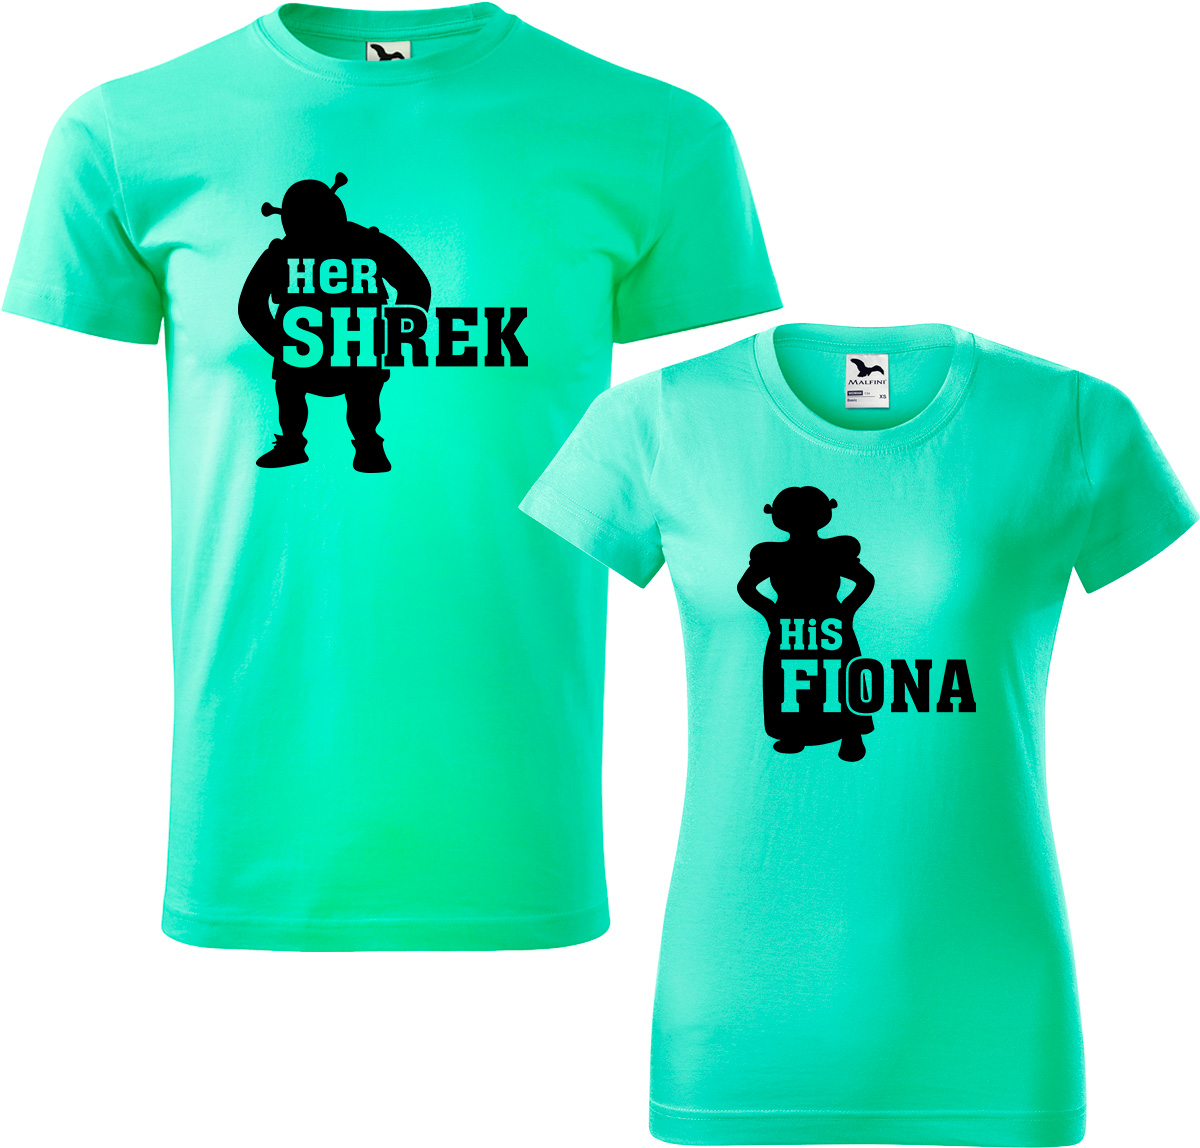 Trička pro páry - Shrek a Fiona Barva: Mátová (95), Velikost dámské tričko: S, Velikost pánské tričko: S